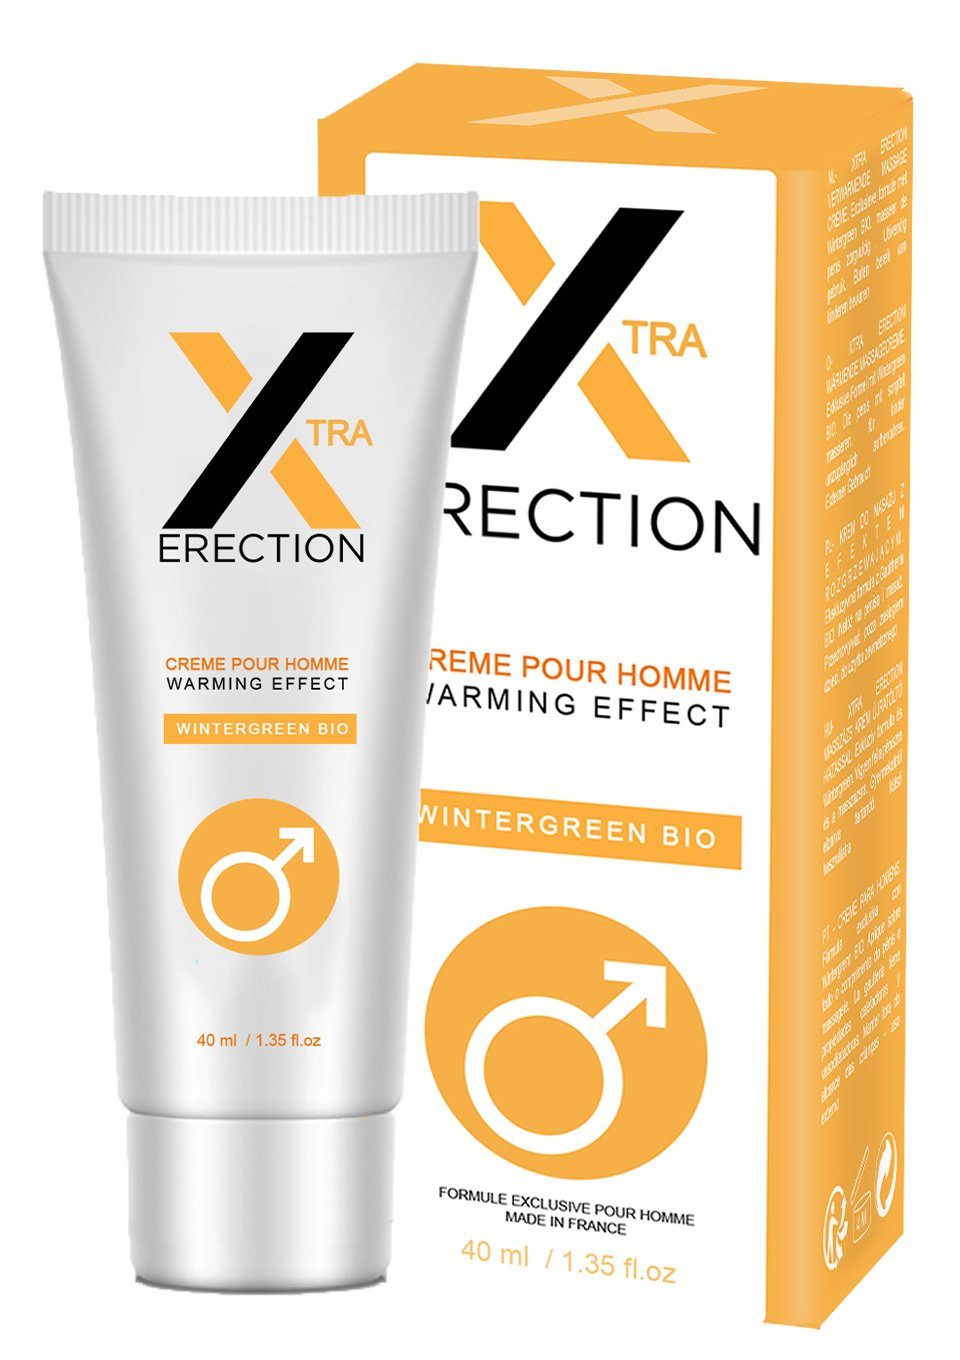 Ruf Stimulationsgel Xtra Erection Erections-Creme mit wärmendem Effekt | Gleitgele